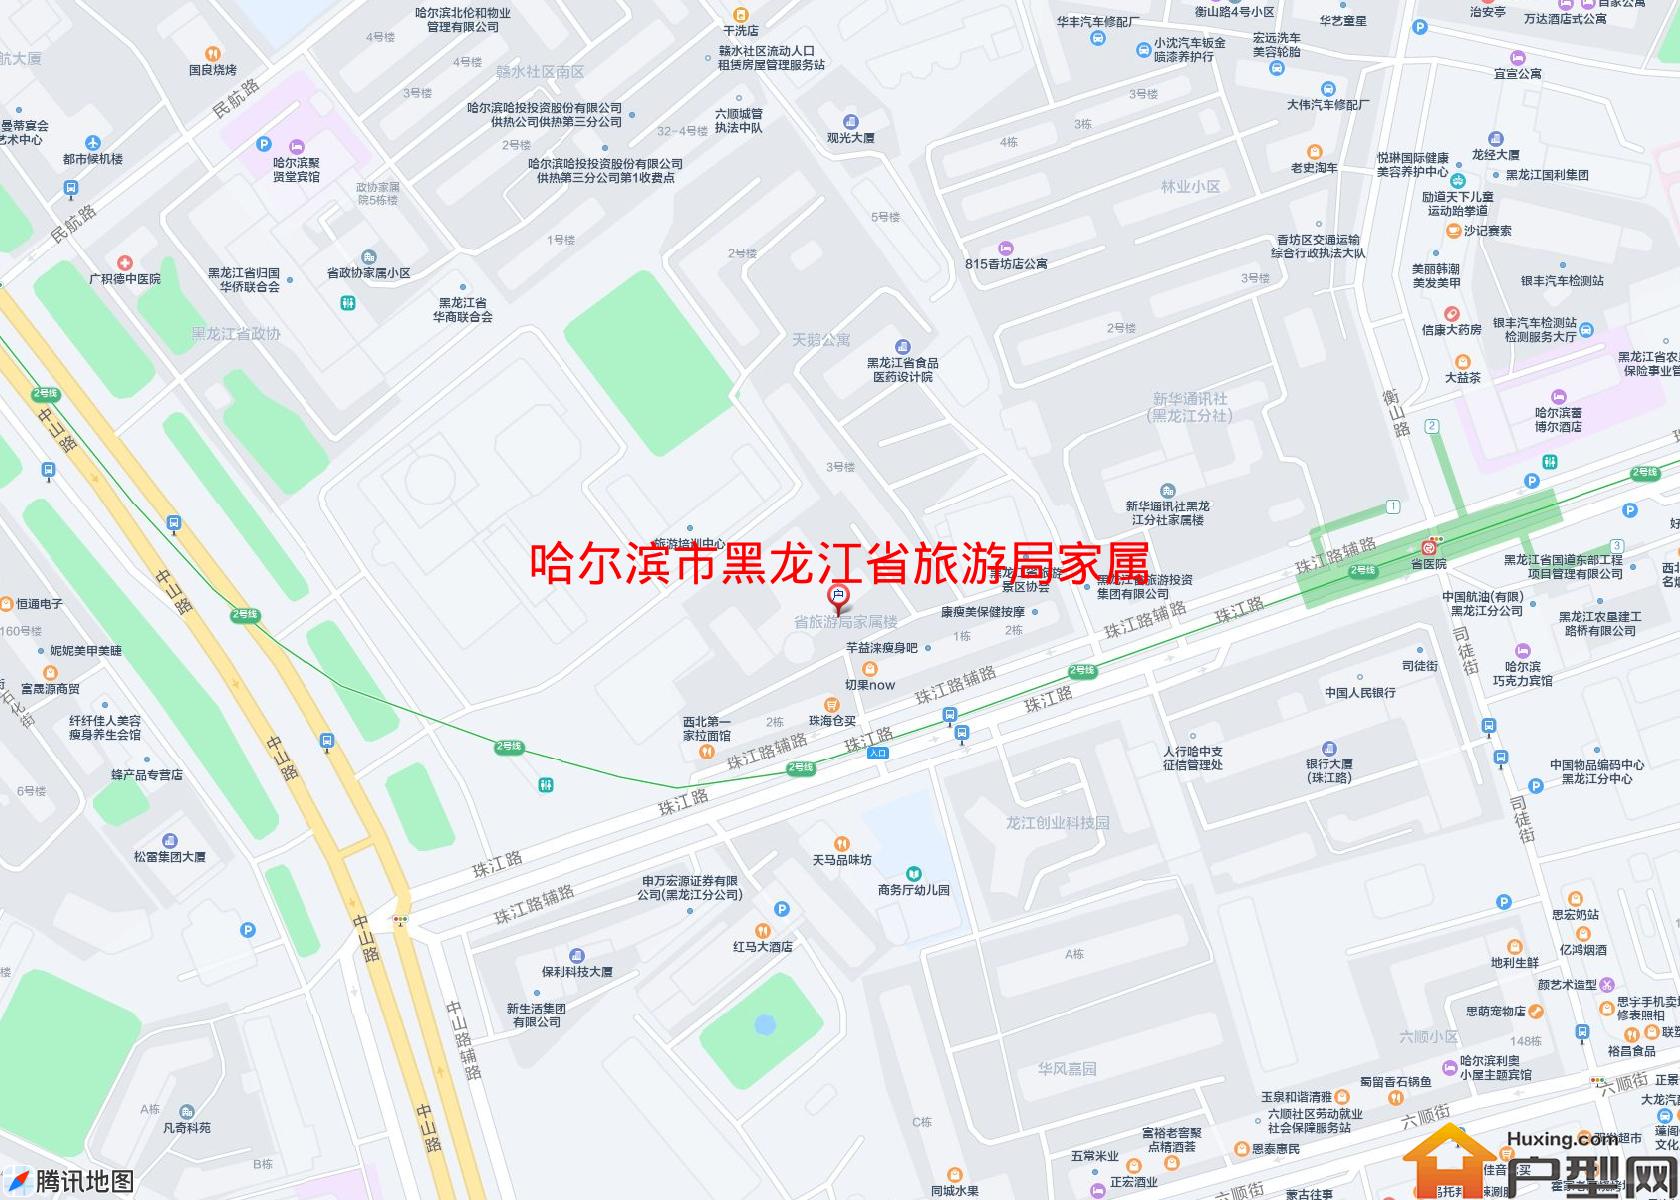 黑龙江省旅游局家属楼小区 - 户型网